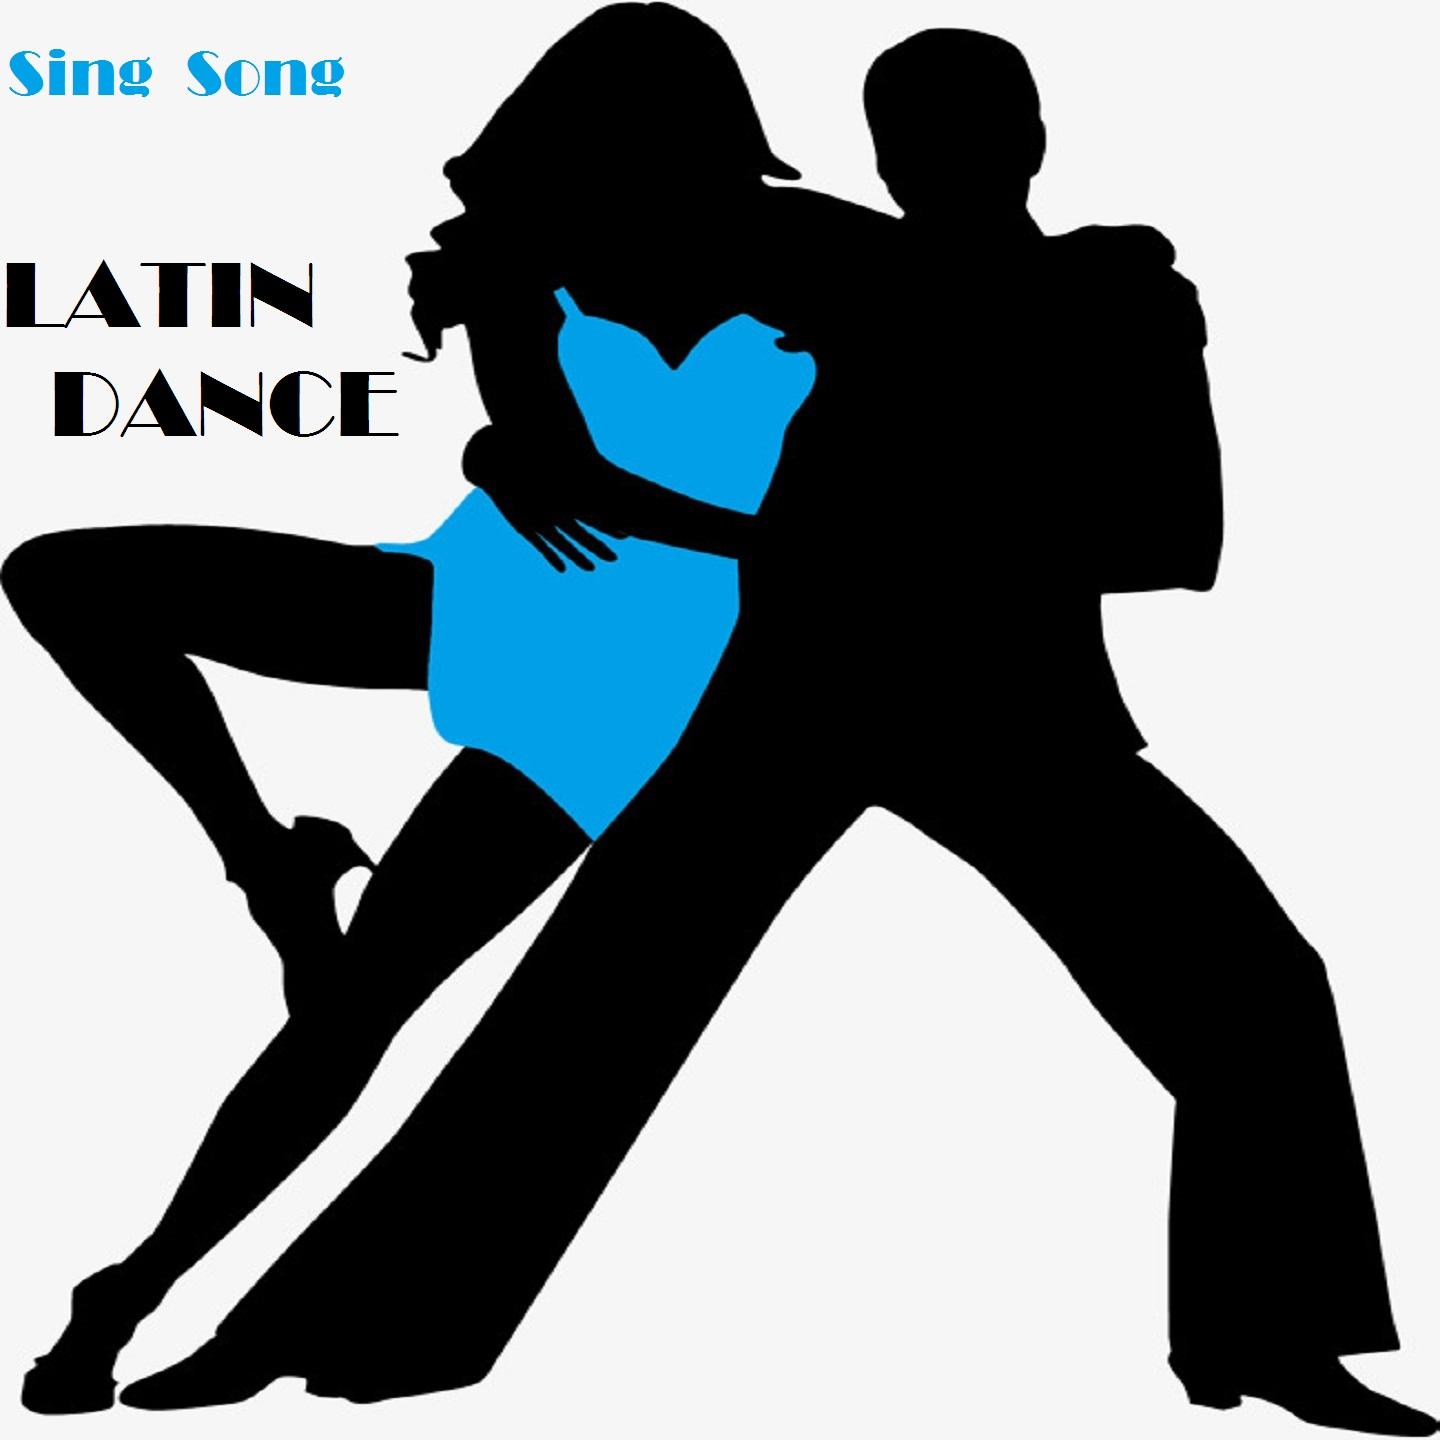 Sing Song Latin Dance